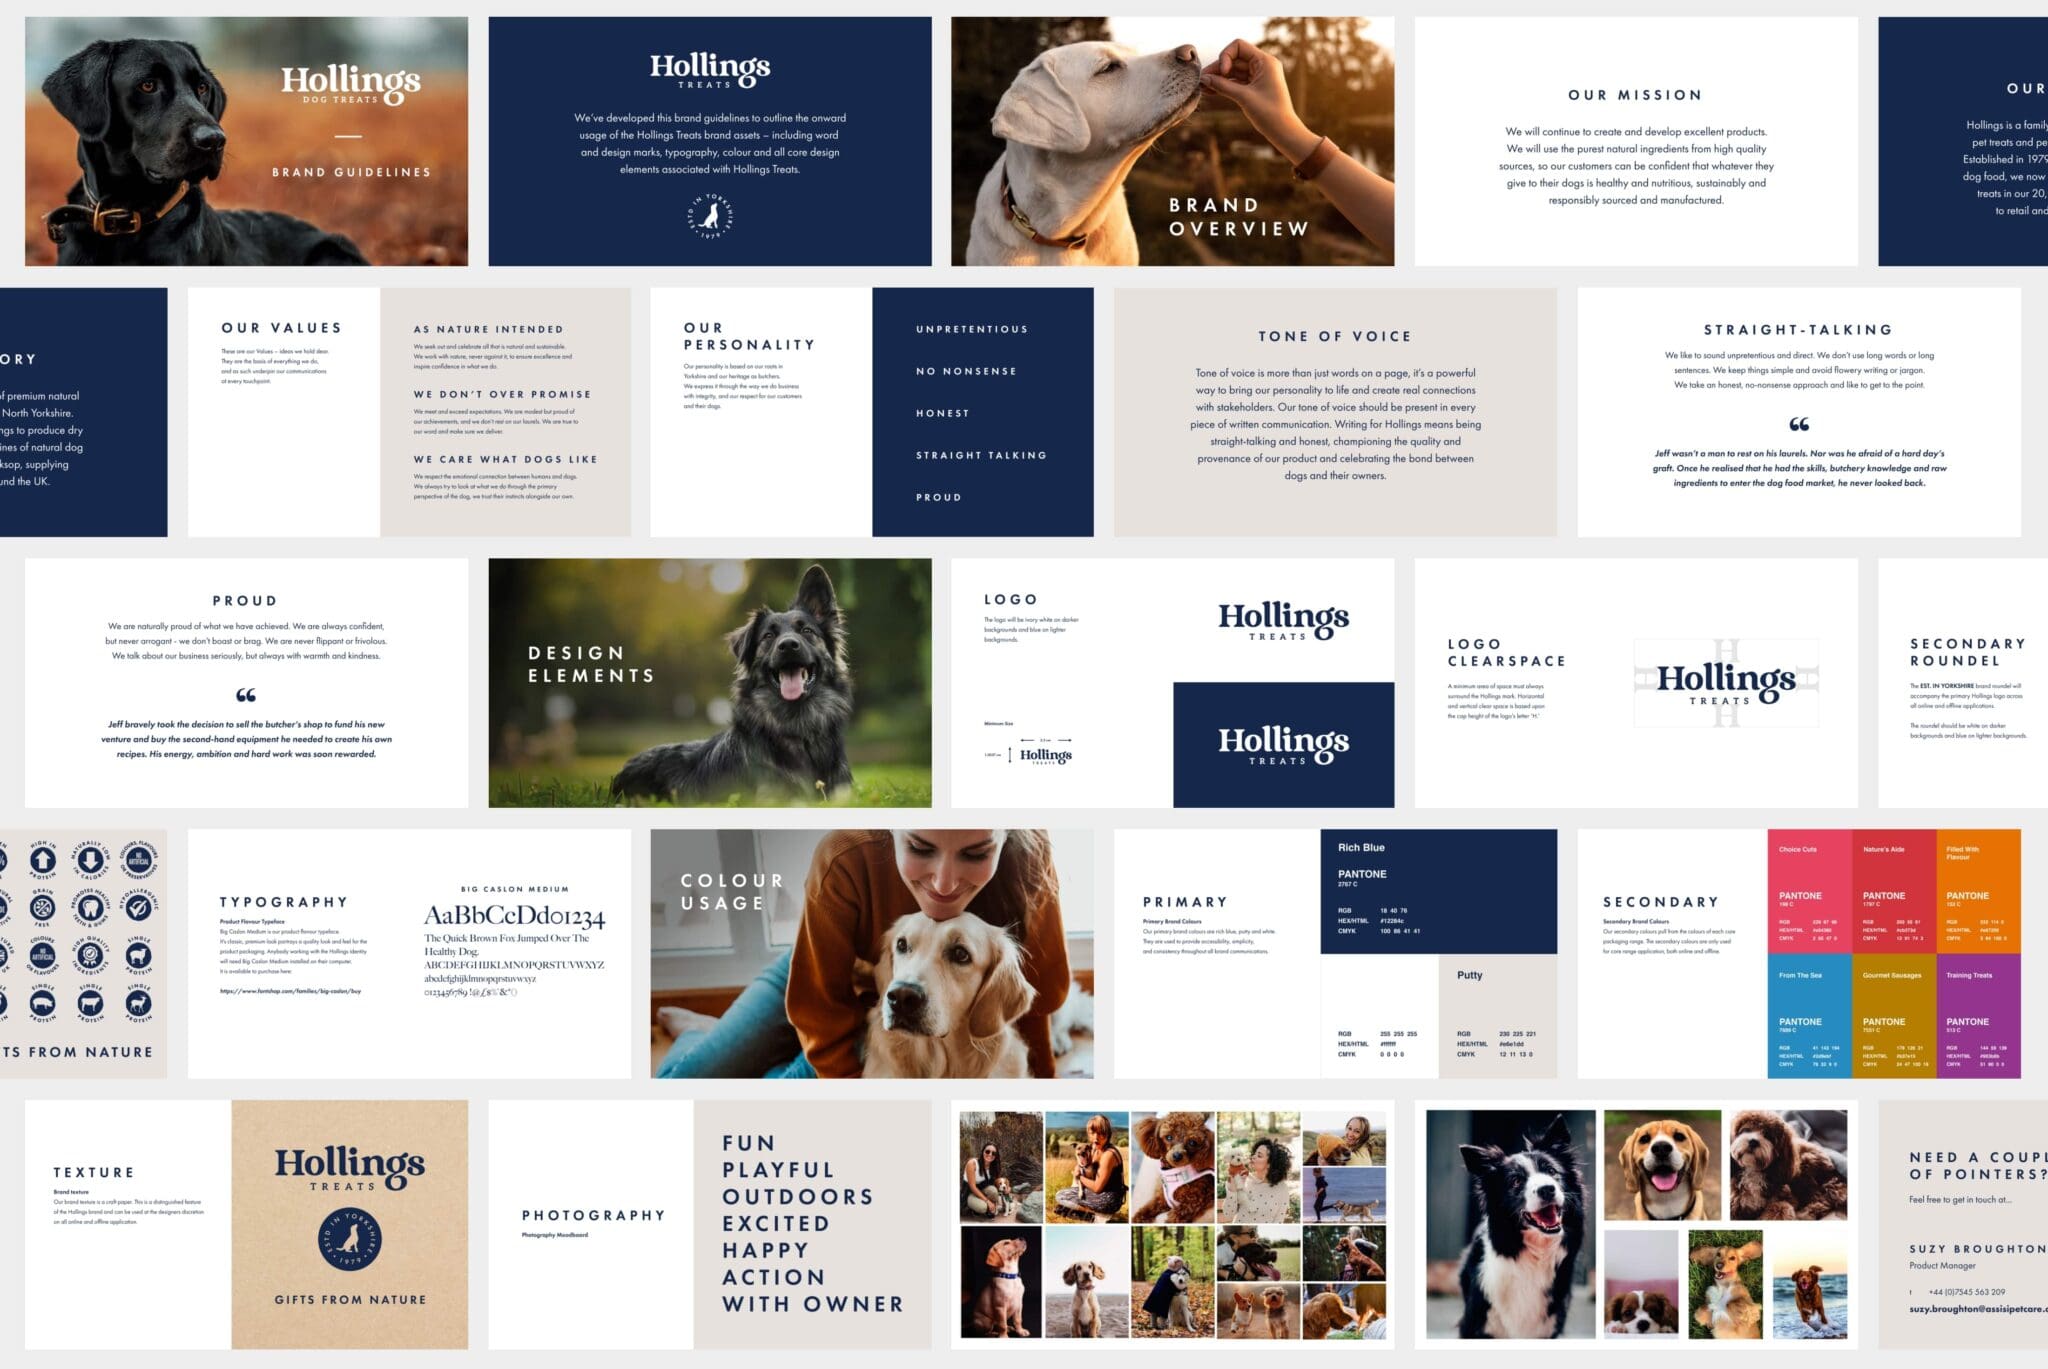 Hollings Pet Food website design by Bluestone digital agency harrogate